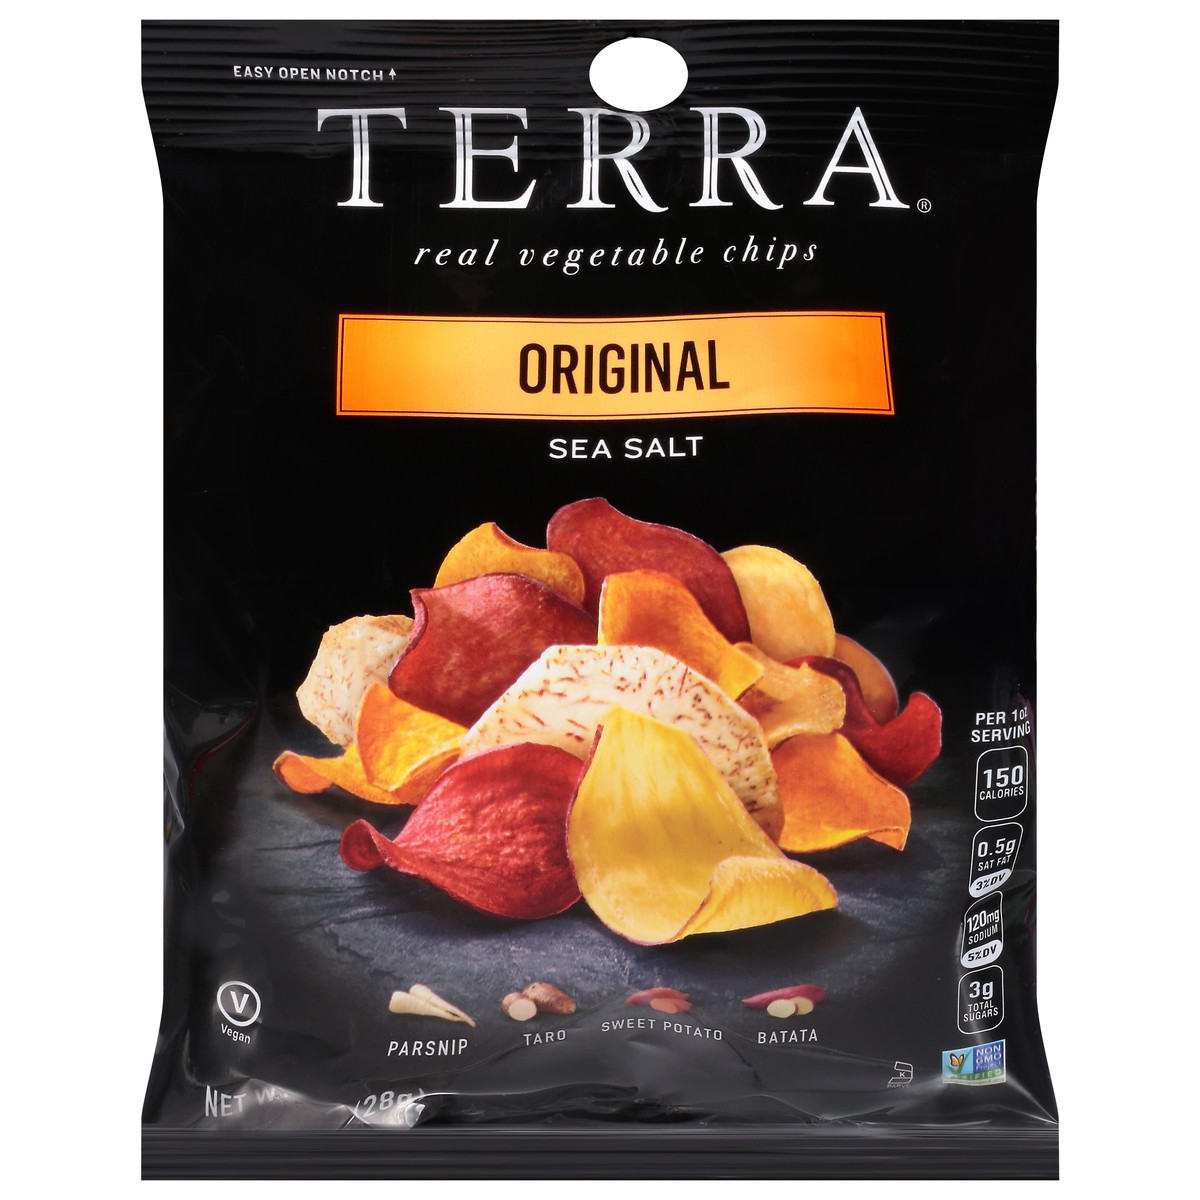 slide 4 of 11, Terra Chips Original Real Vegetable Chips Snack Size, 1 oz